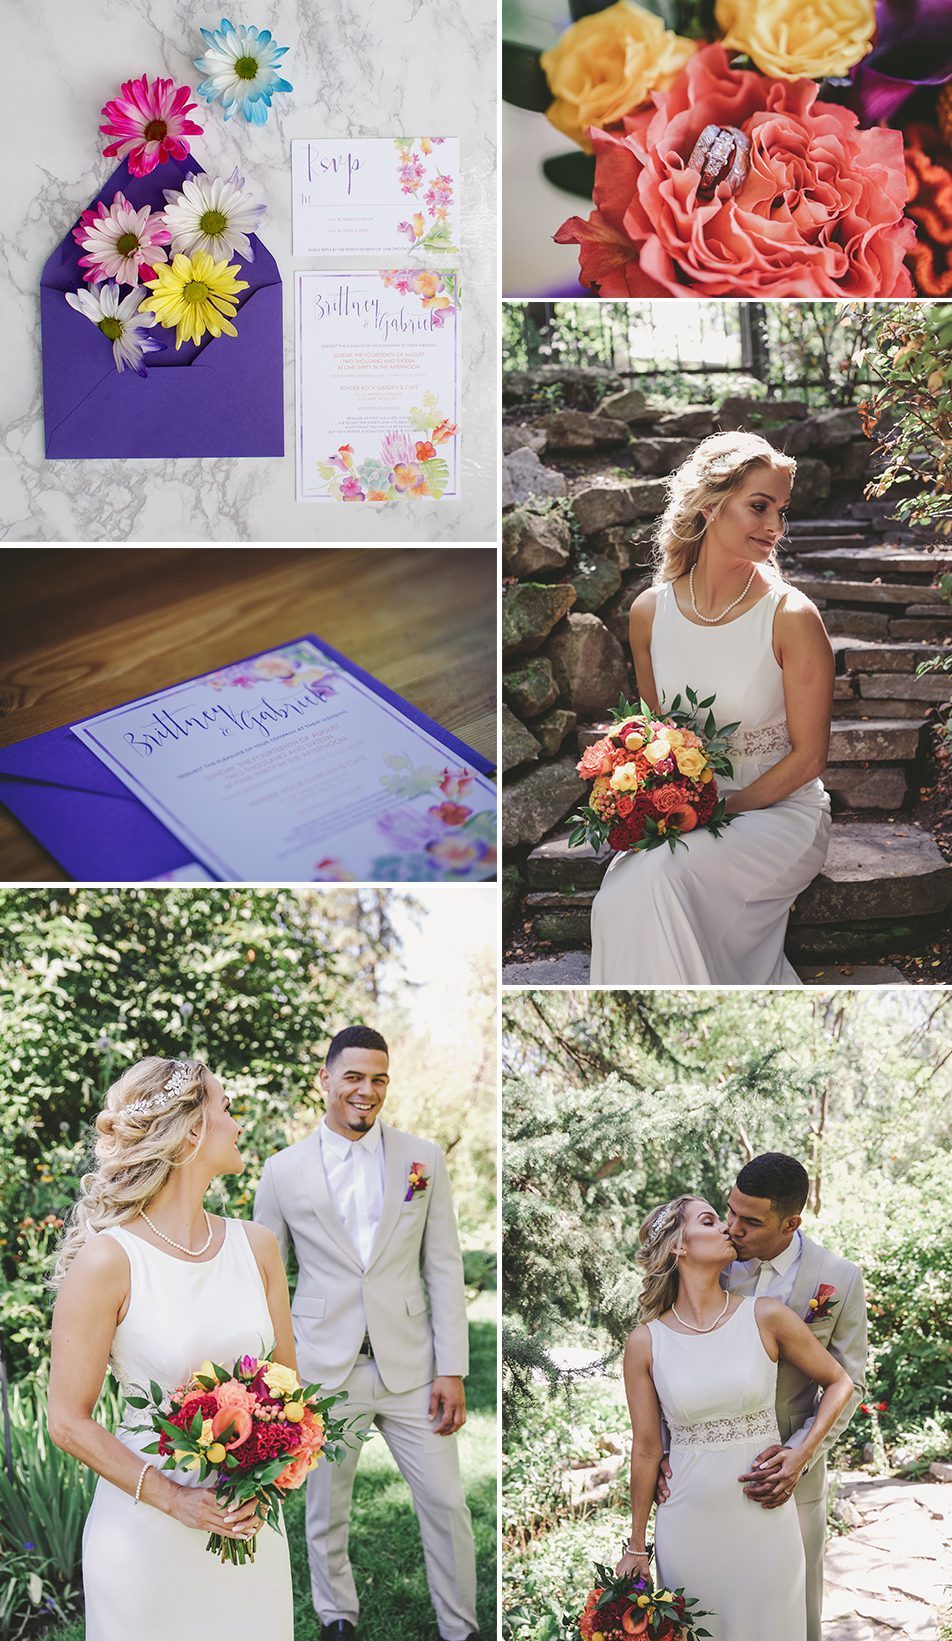 tropical-bohemian-wedding-inspiration_bohemian-tropical-wedding-invitations-by-bohemian-mint